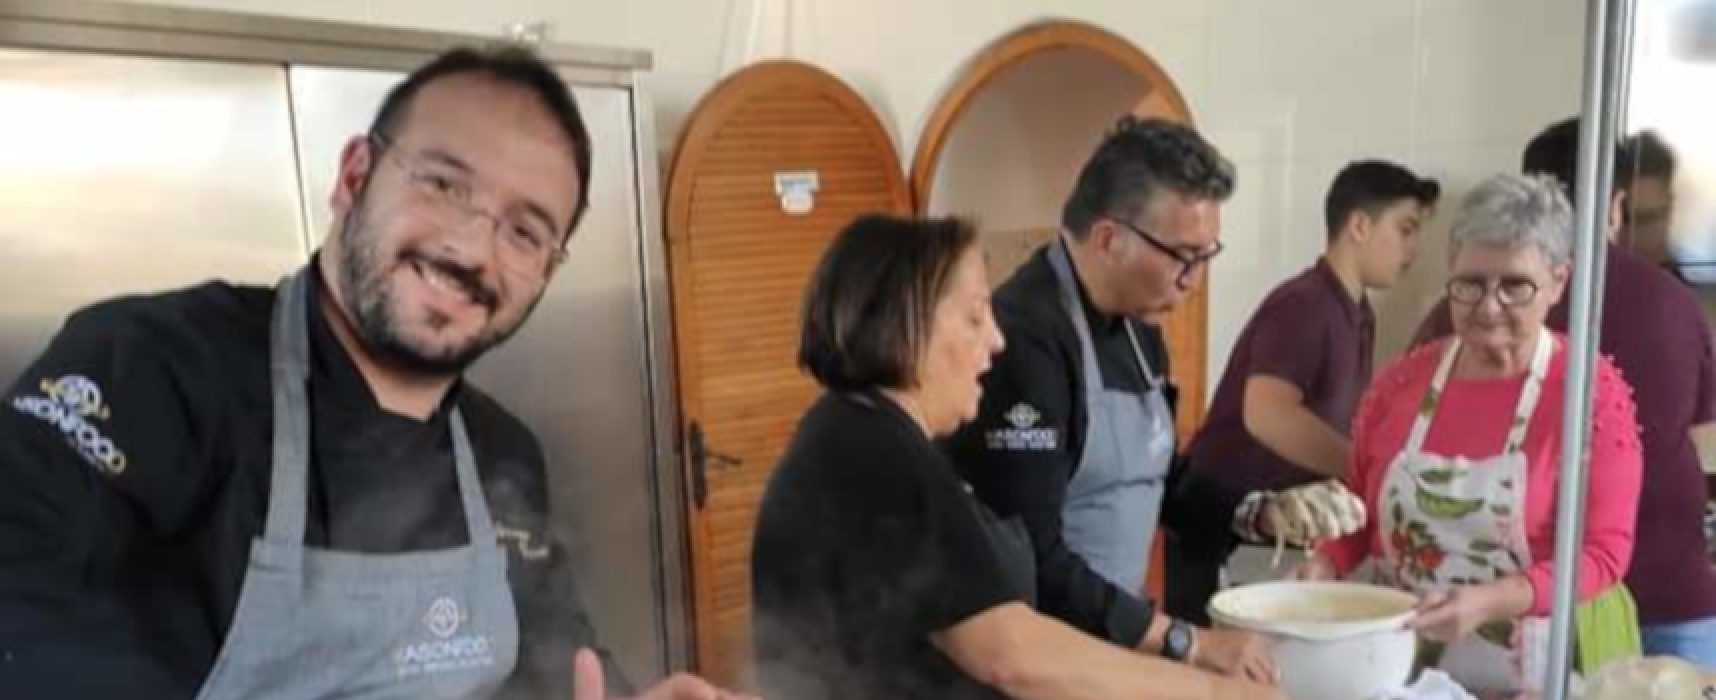 Studenti russi a scuola di cucina pugliese con gli chef biscegliesi Frizzale e Papagni / FOTO